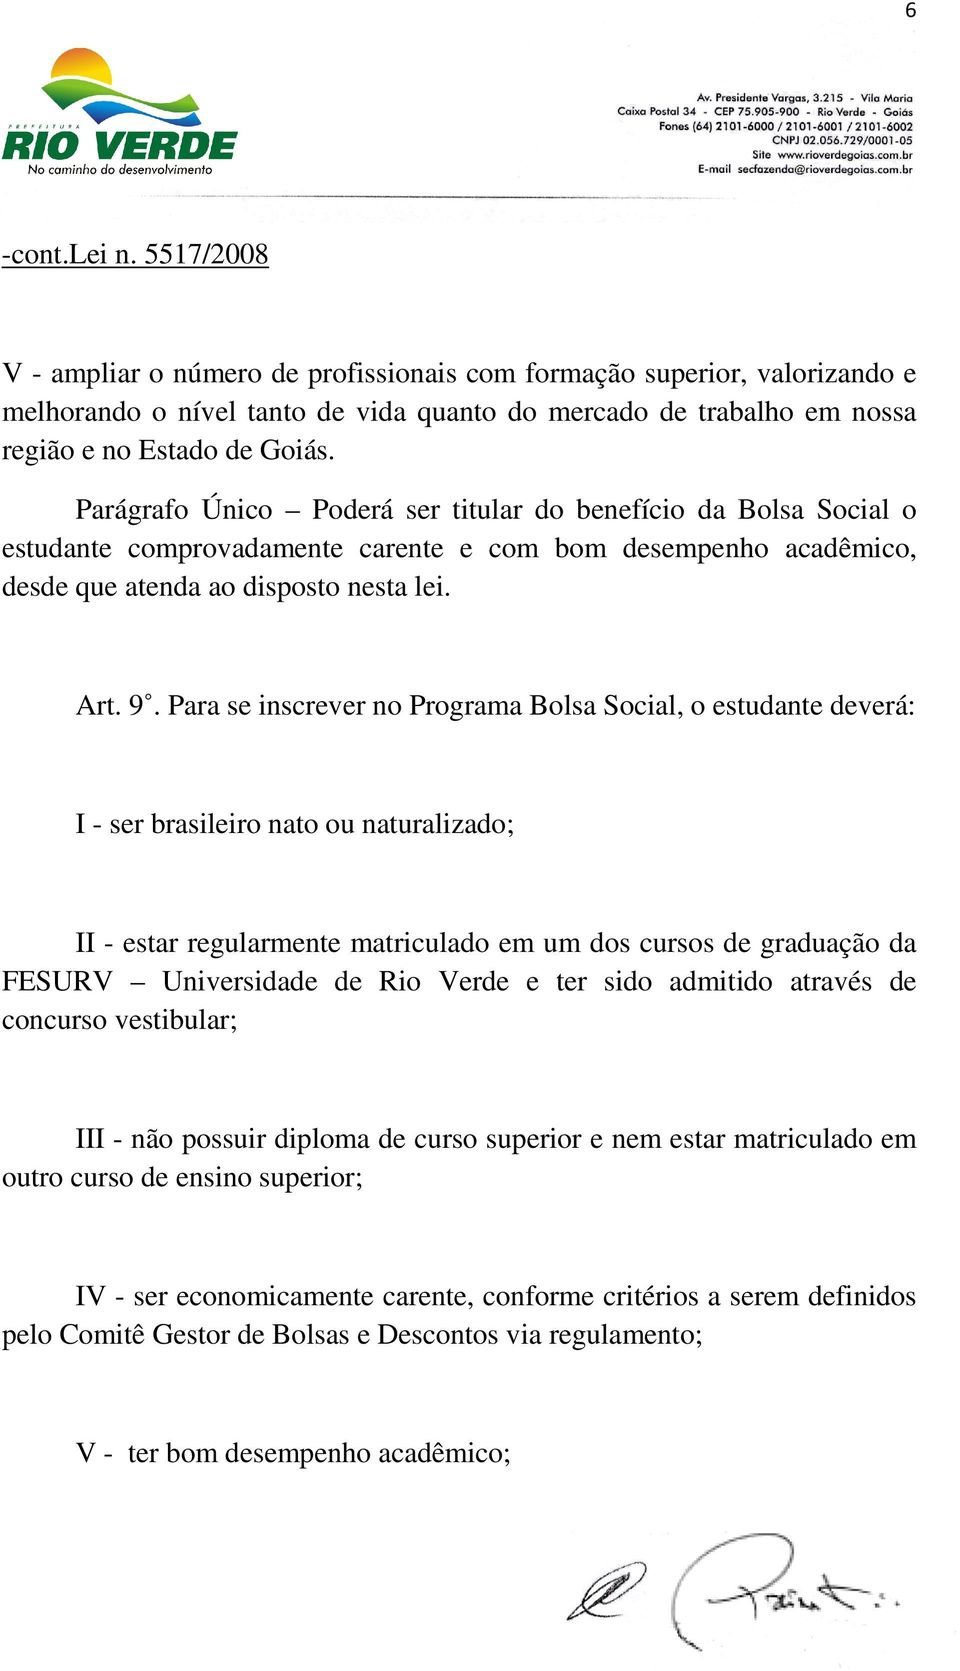 Para se inscrever no Programa Bolsa Social, o estudante deverá: I - ser brasileiro nato ou naturalizado; II - estar regularmente matriculado em um dos cursos de graduação da FESURV Universidade de